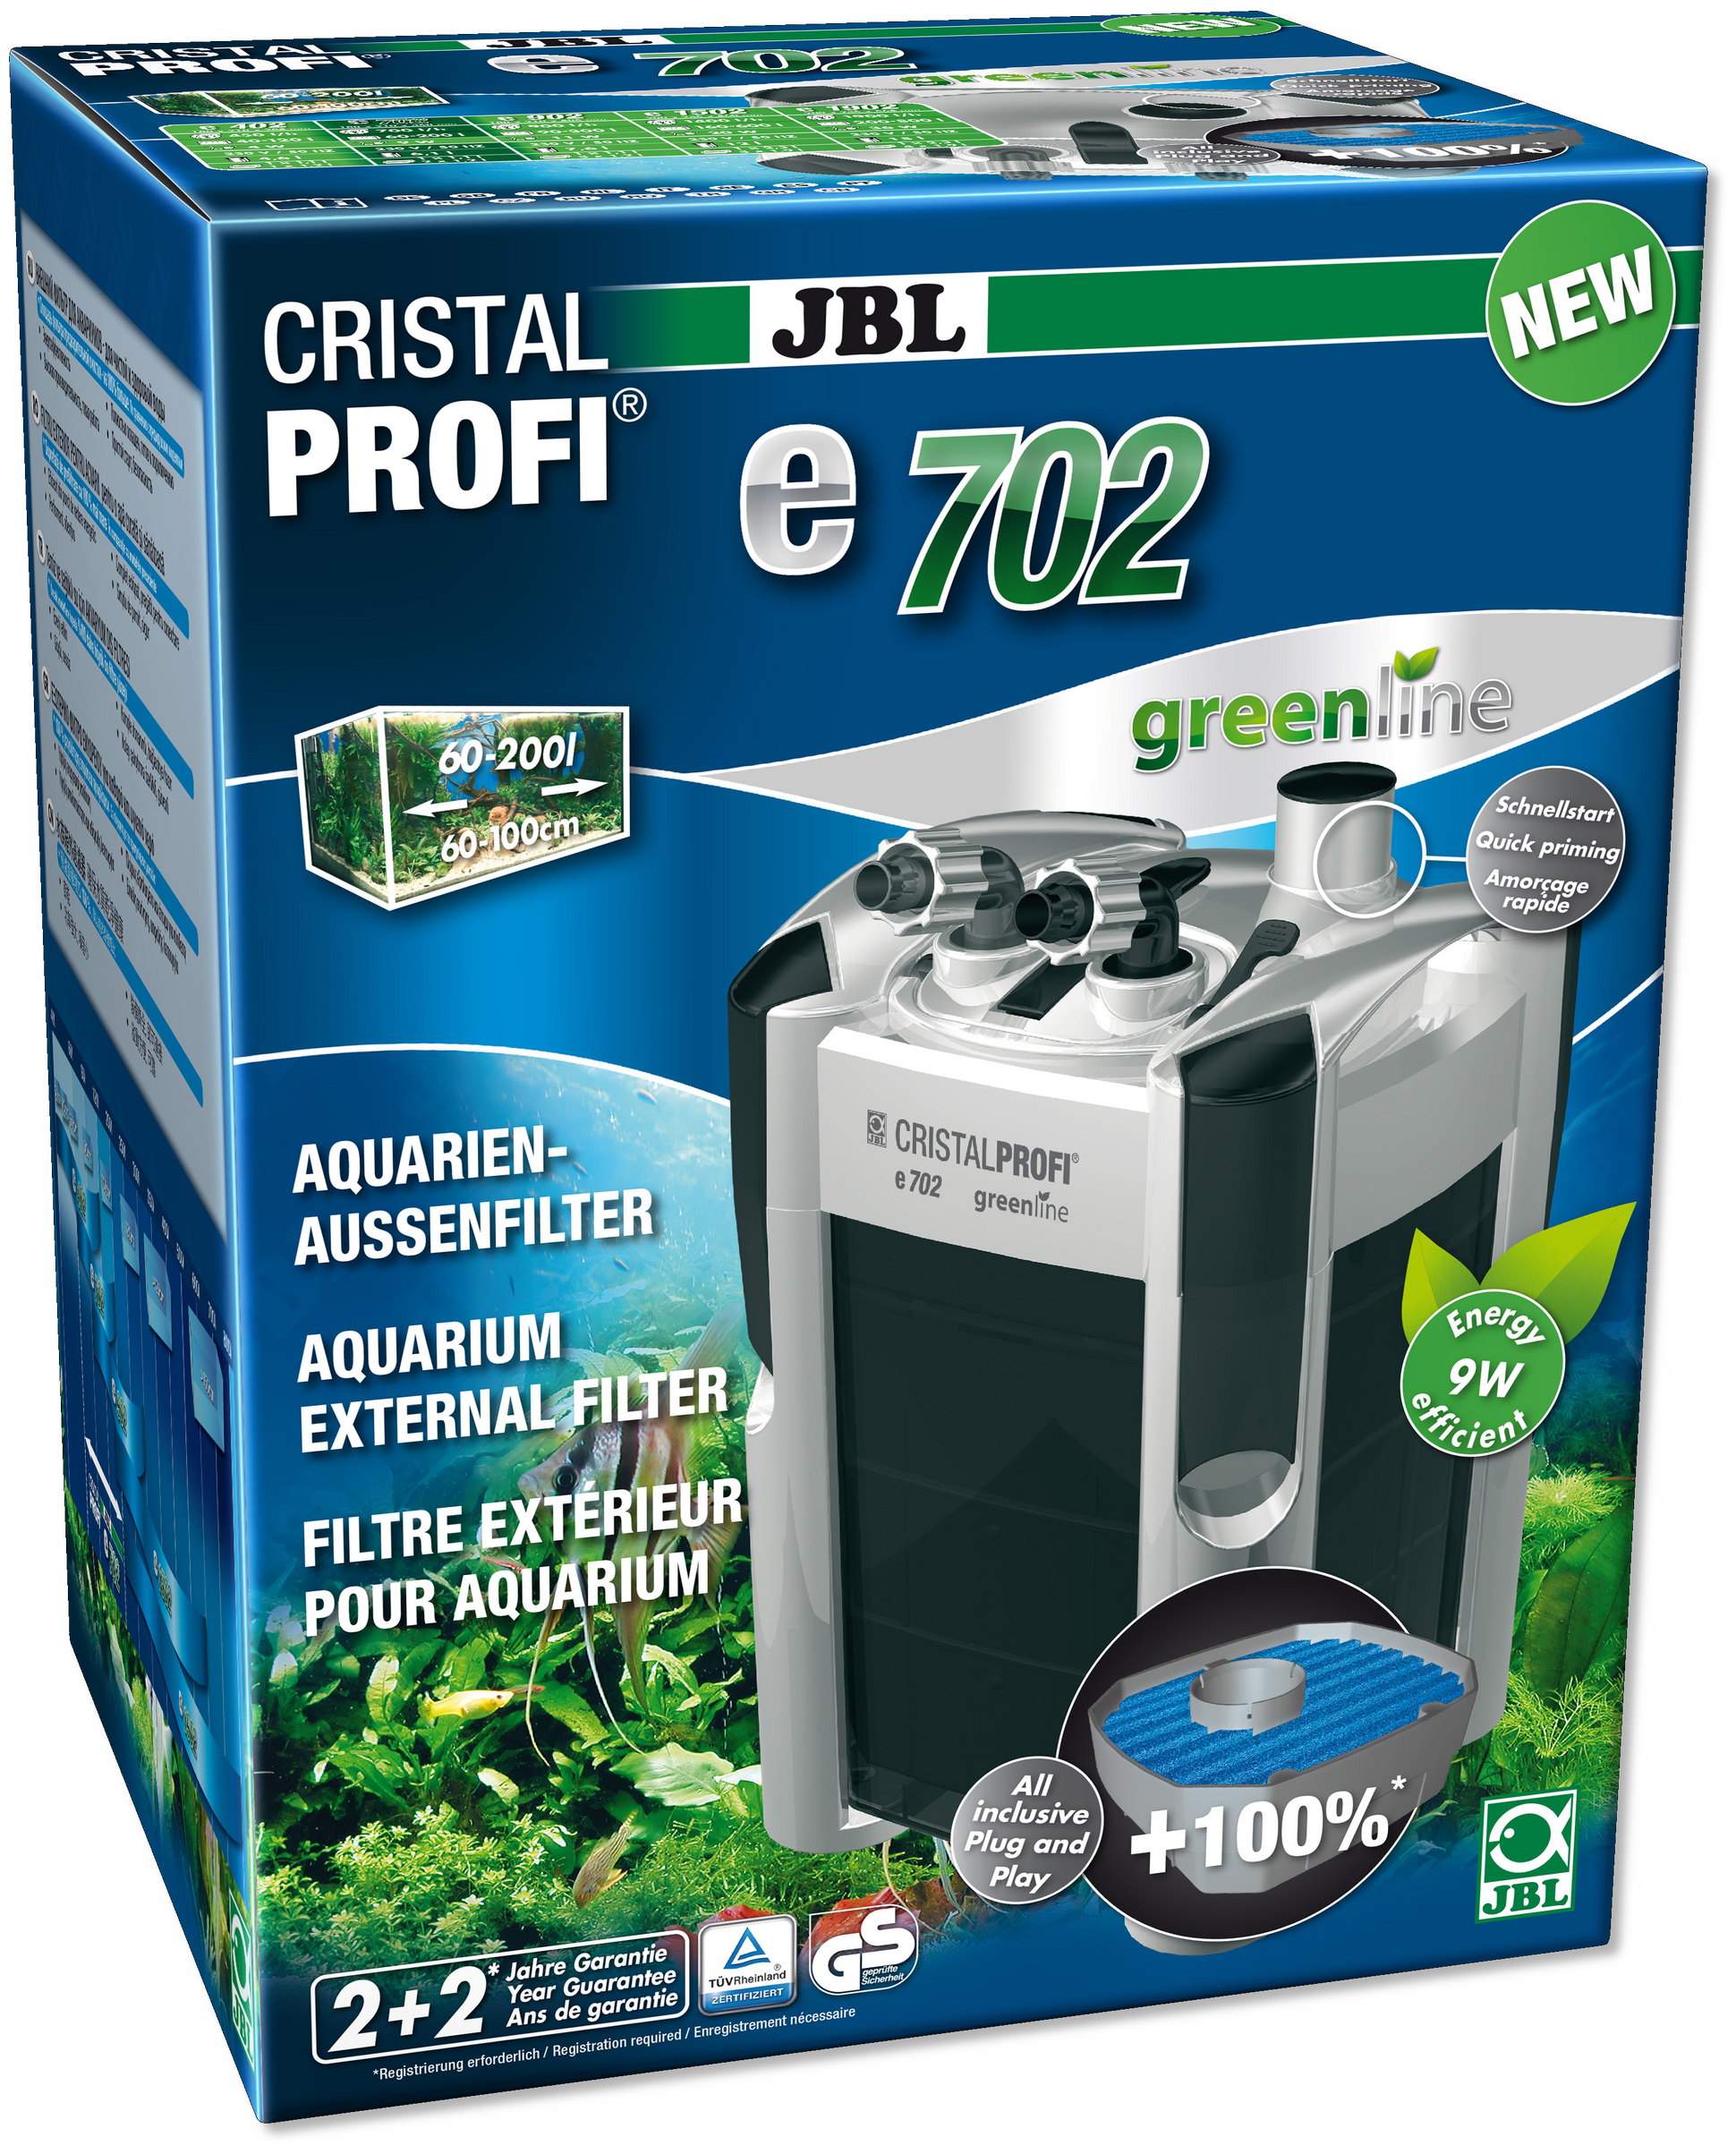 Este es el modelo de filtro esterior Jbl Cristal profi greenline 702, con un gran caudal de agua